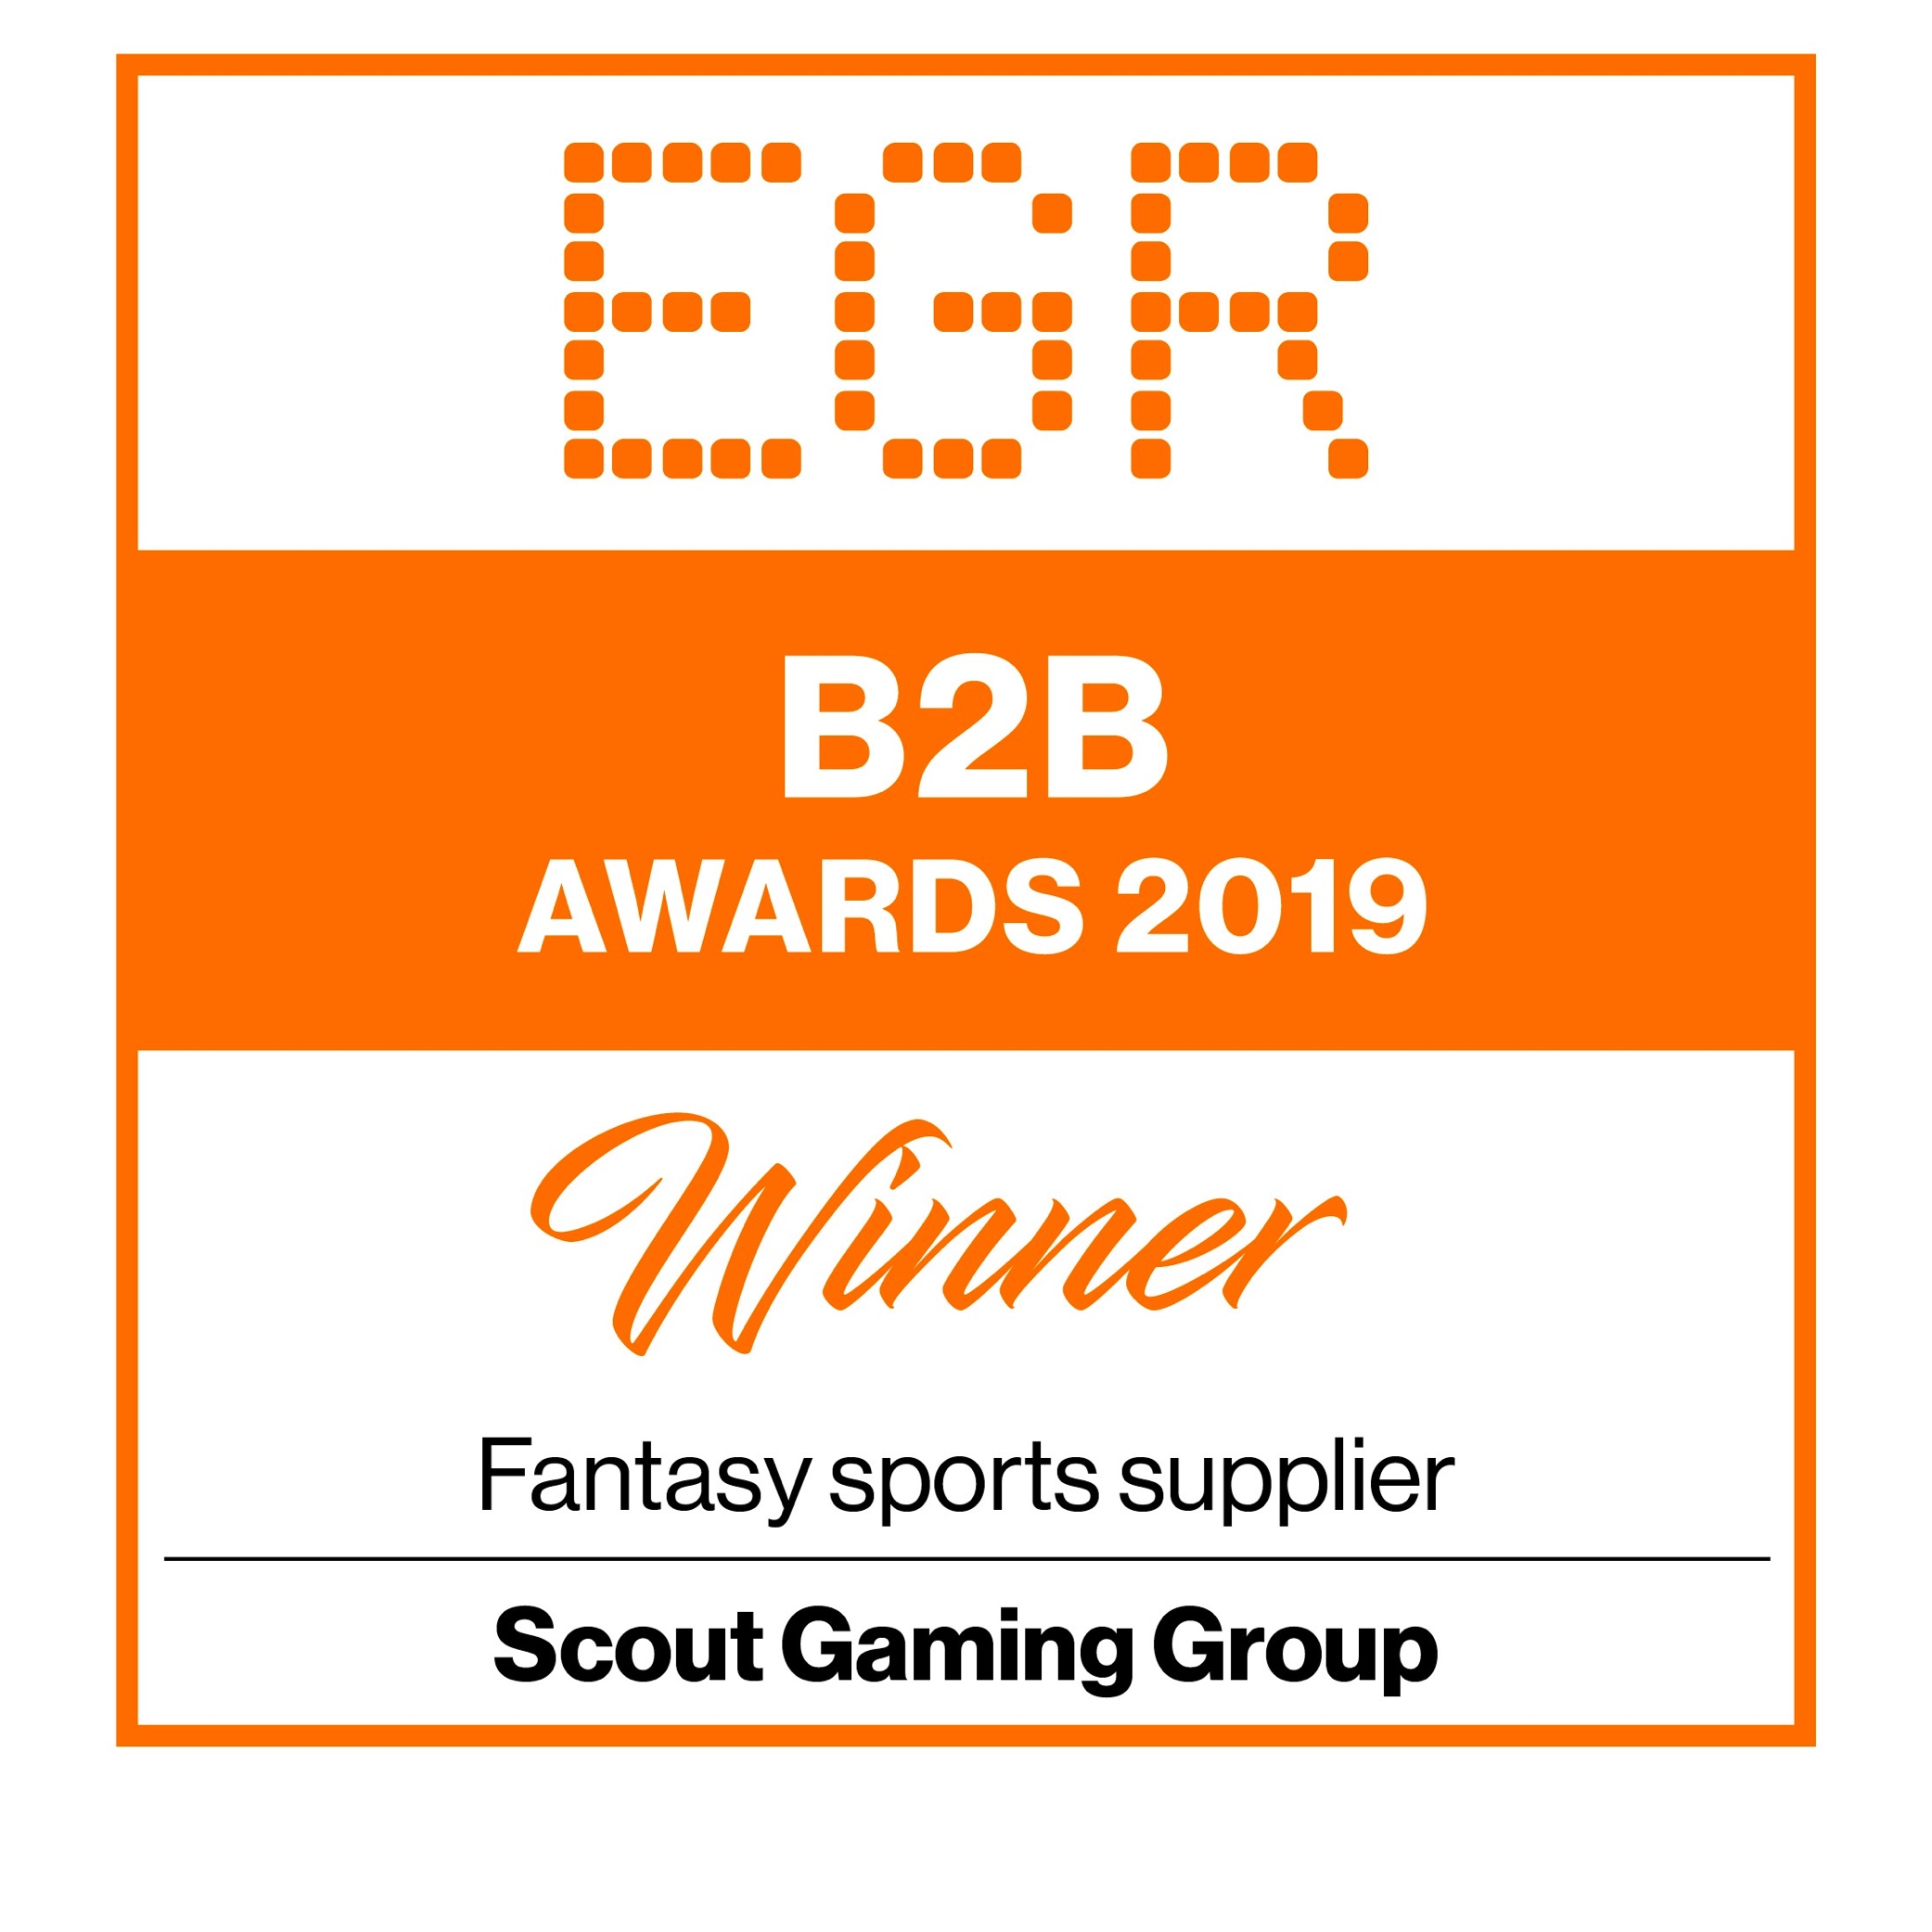 EGR B2B Awards 2019 Winner Fantasy Sports